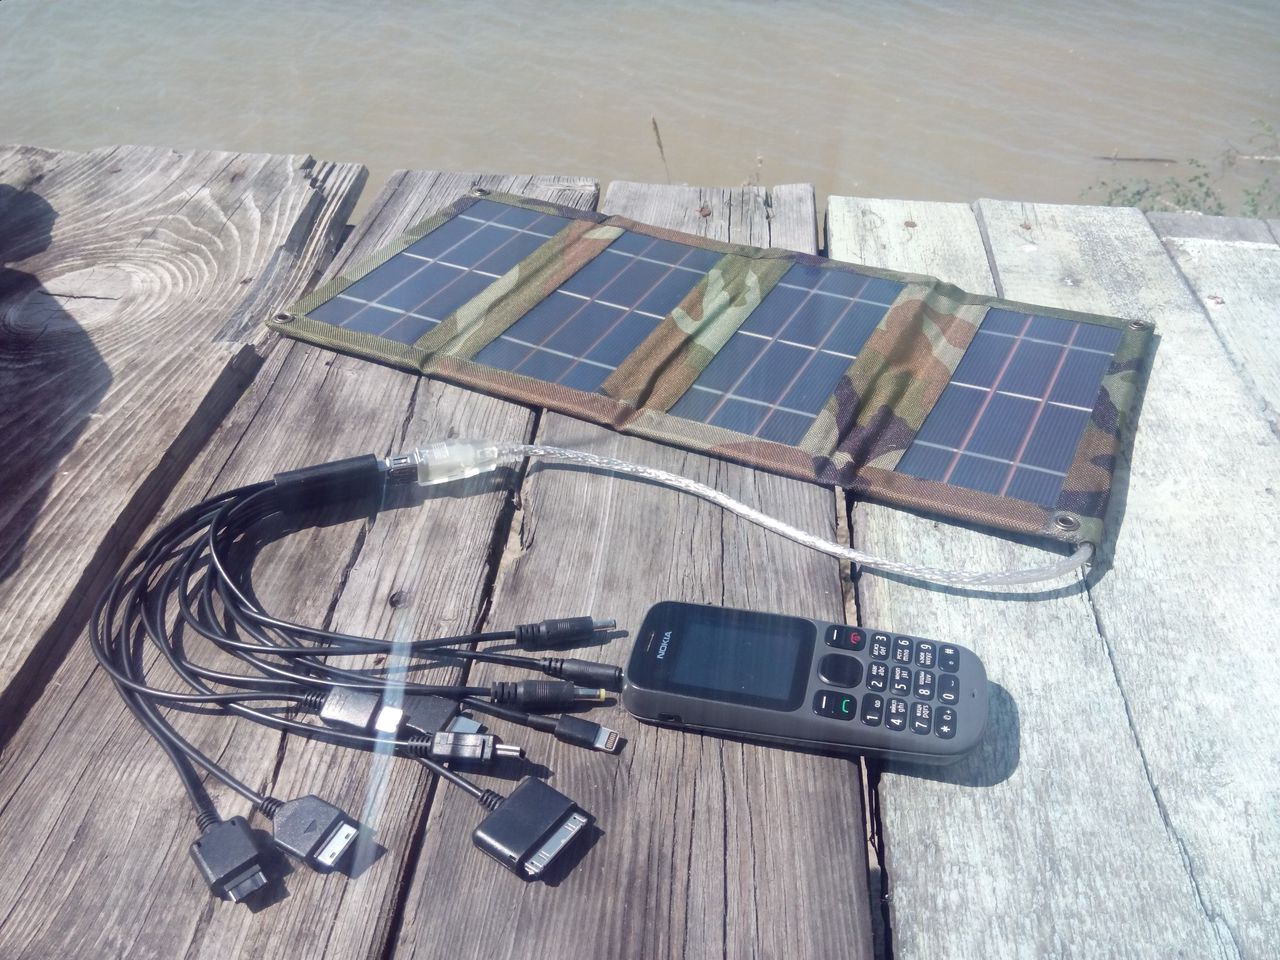 Солнечная батарея своими руками: подробная инструкция сборки